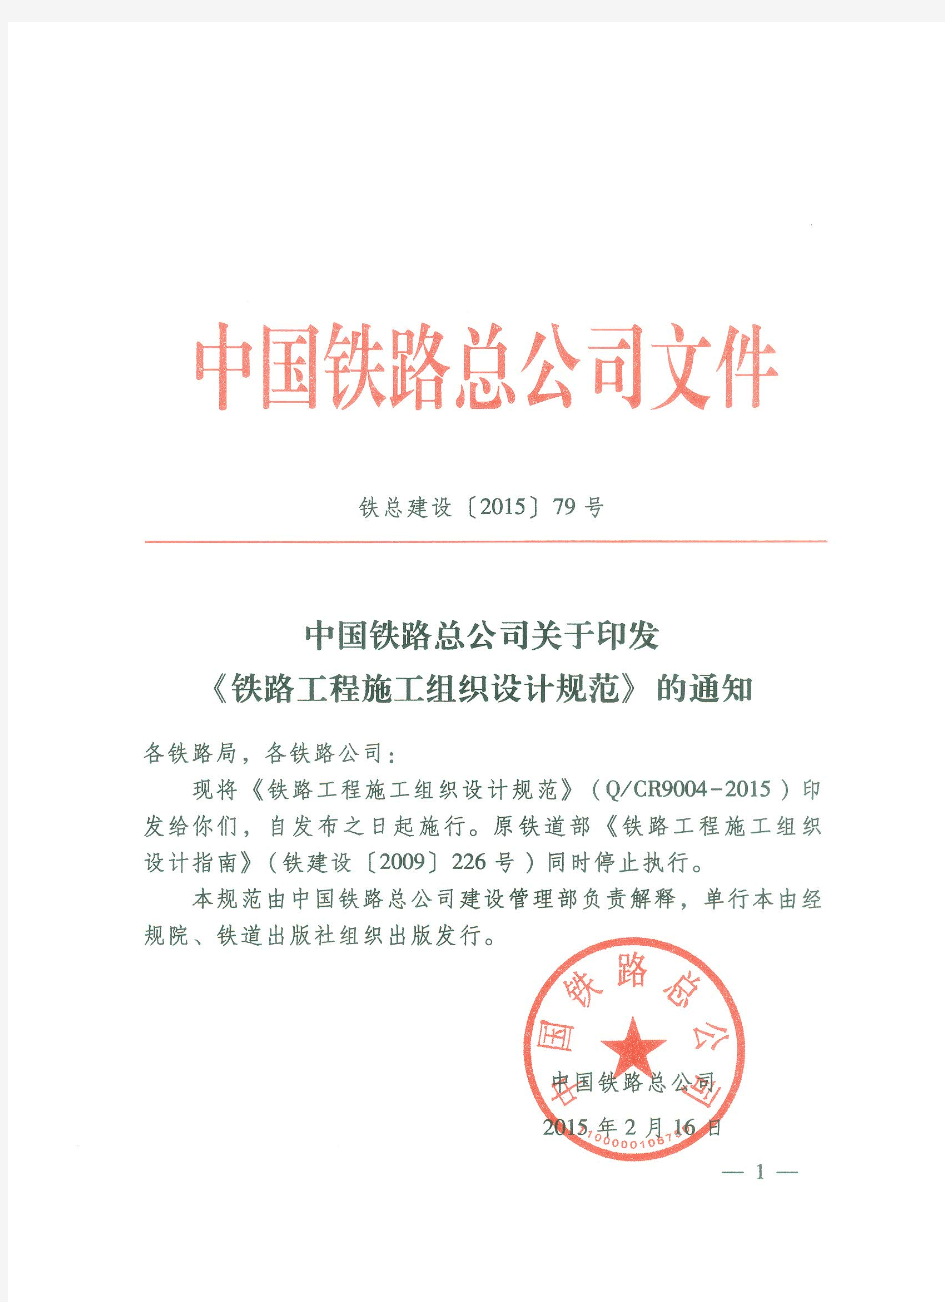 中国铁路总公司 关于印发《铁路工程施工组织设计规范》的通知